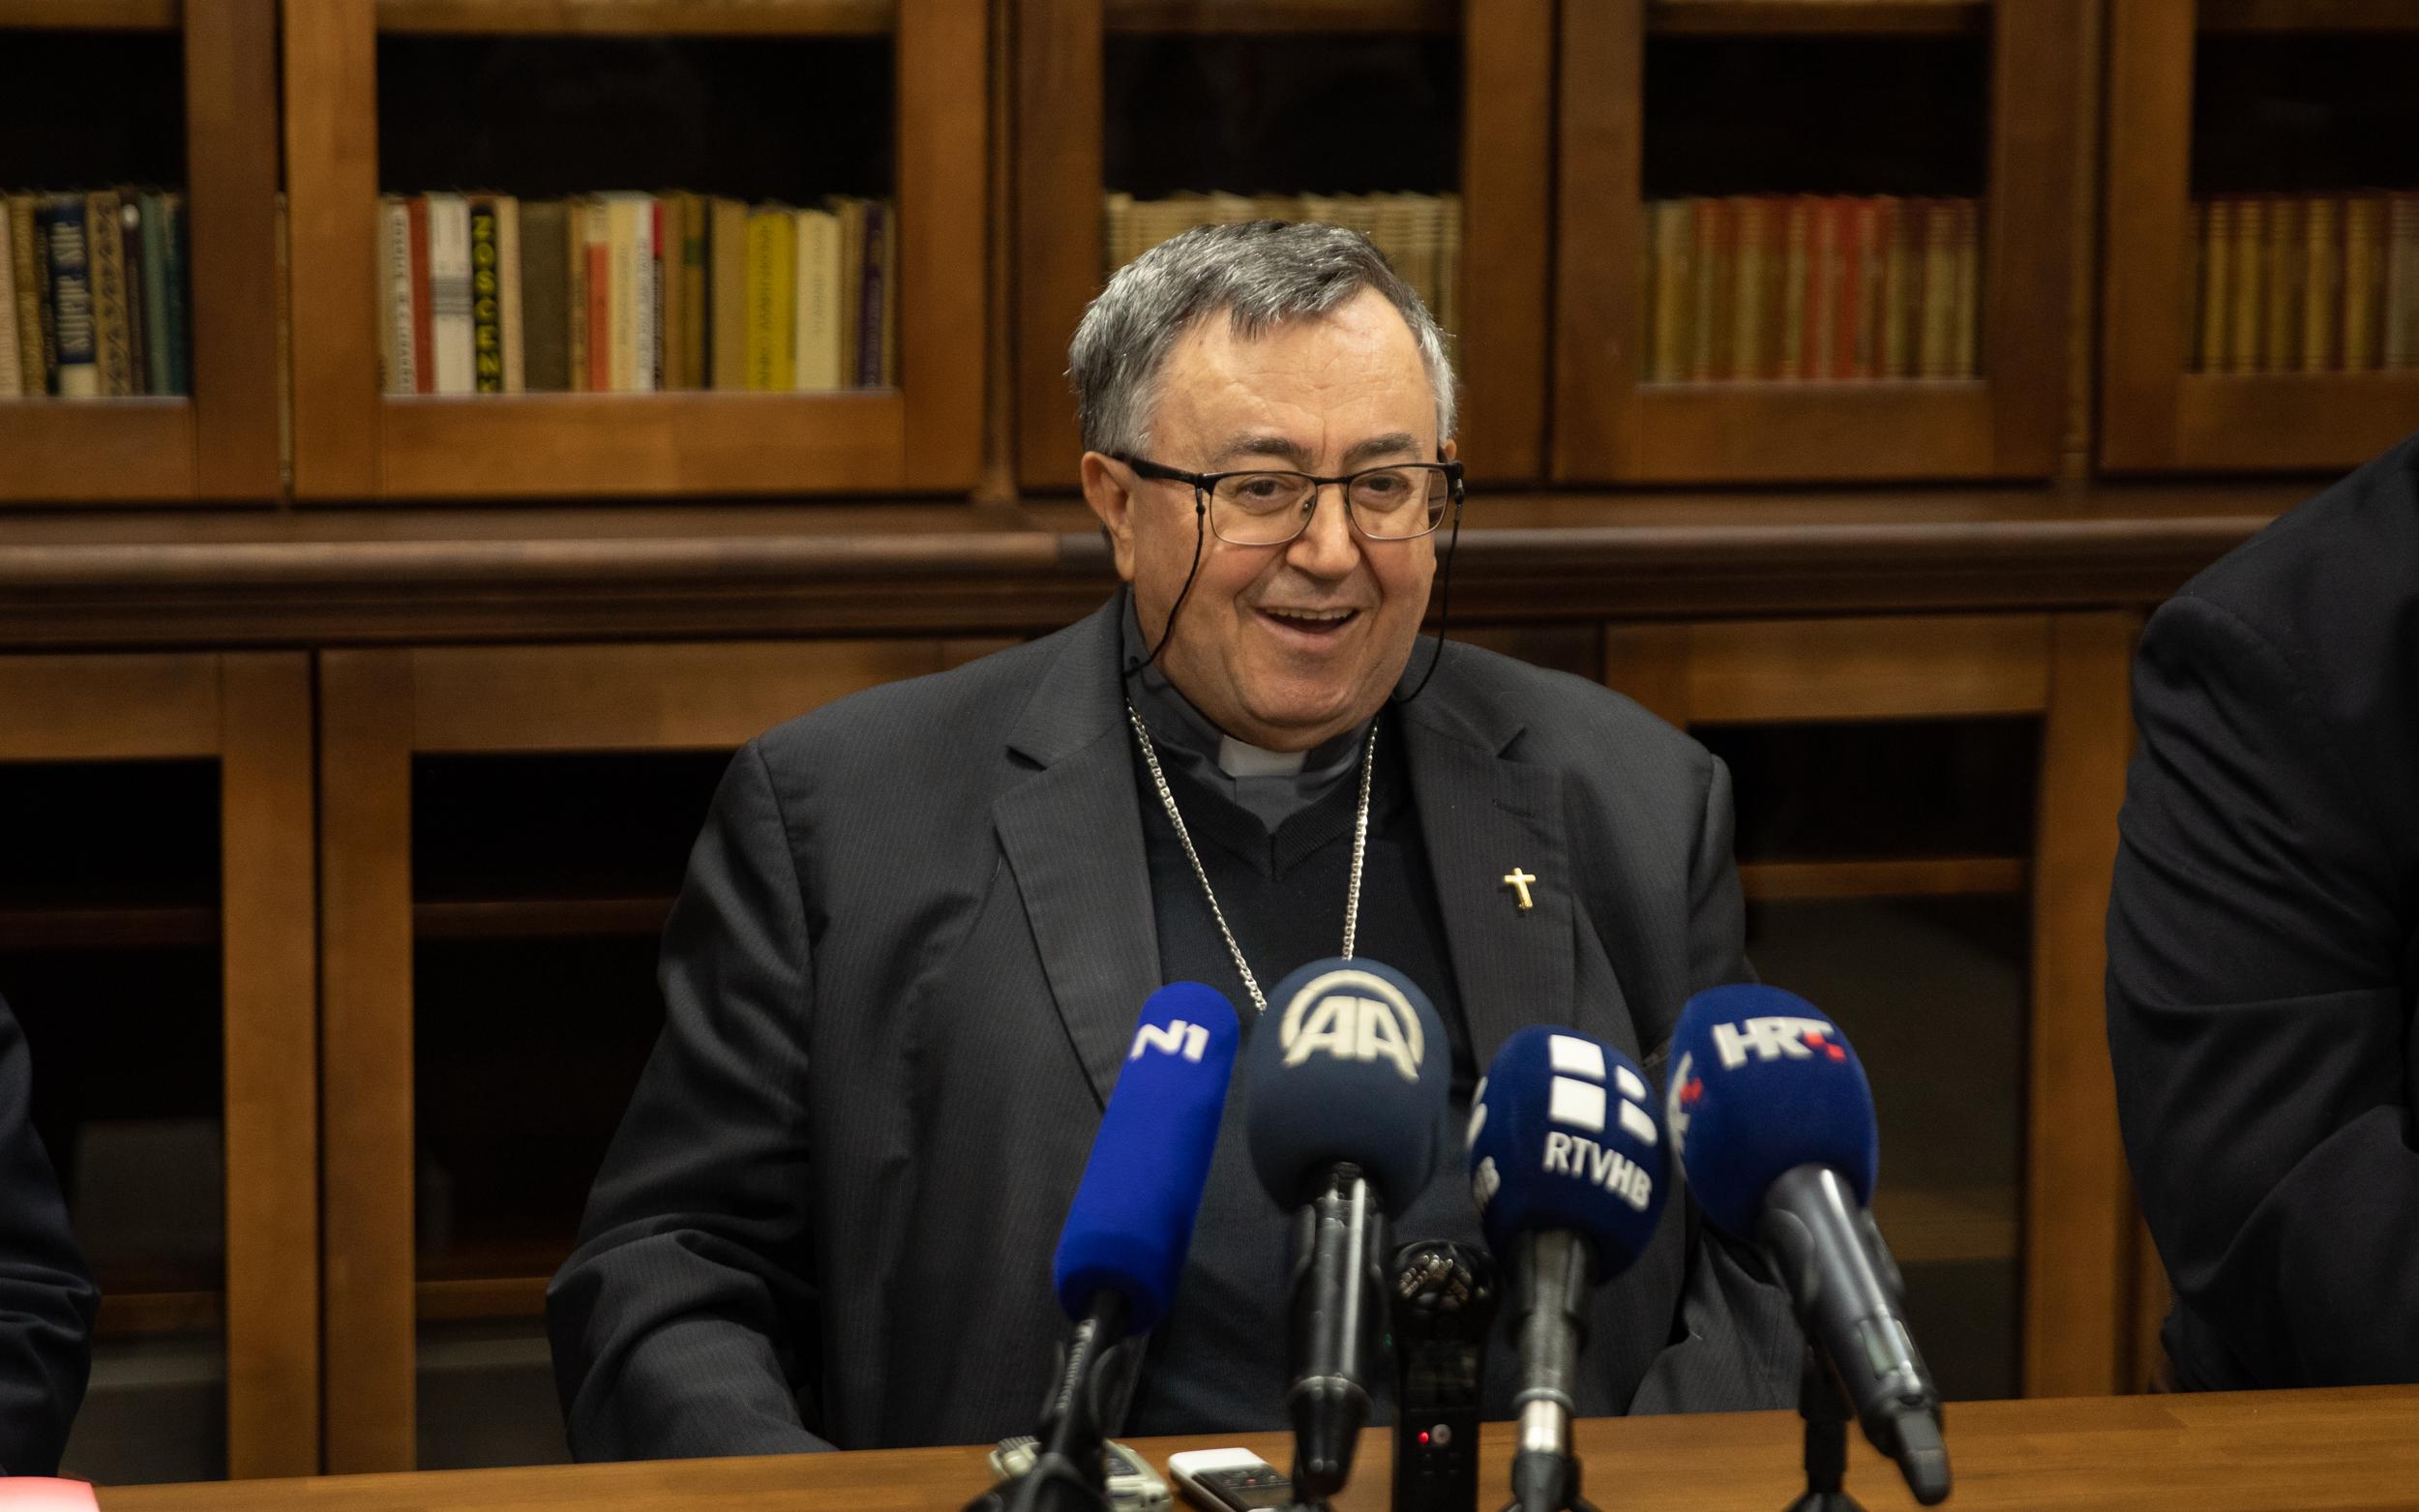 Vrhbosanski nadbiskup kardinal Vinko Puljić: Kako biti vjerodostojan katolik u ovim vremenima